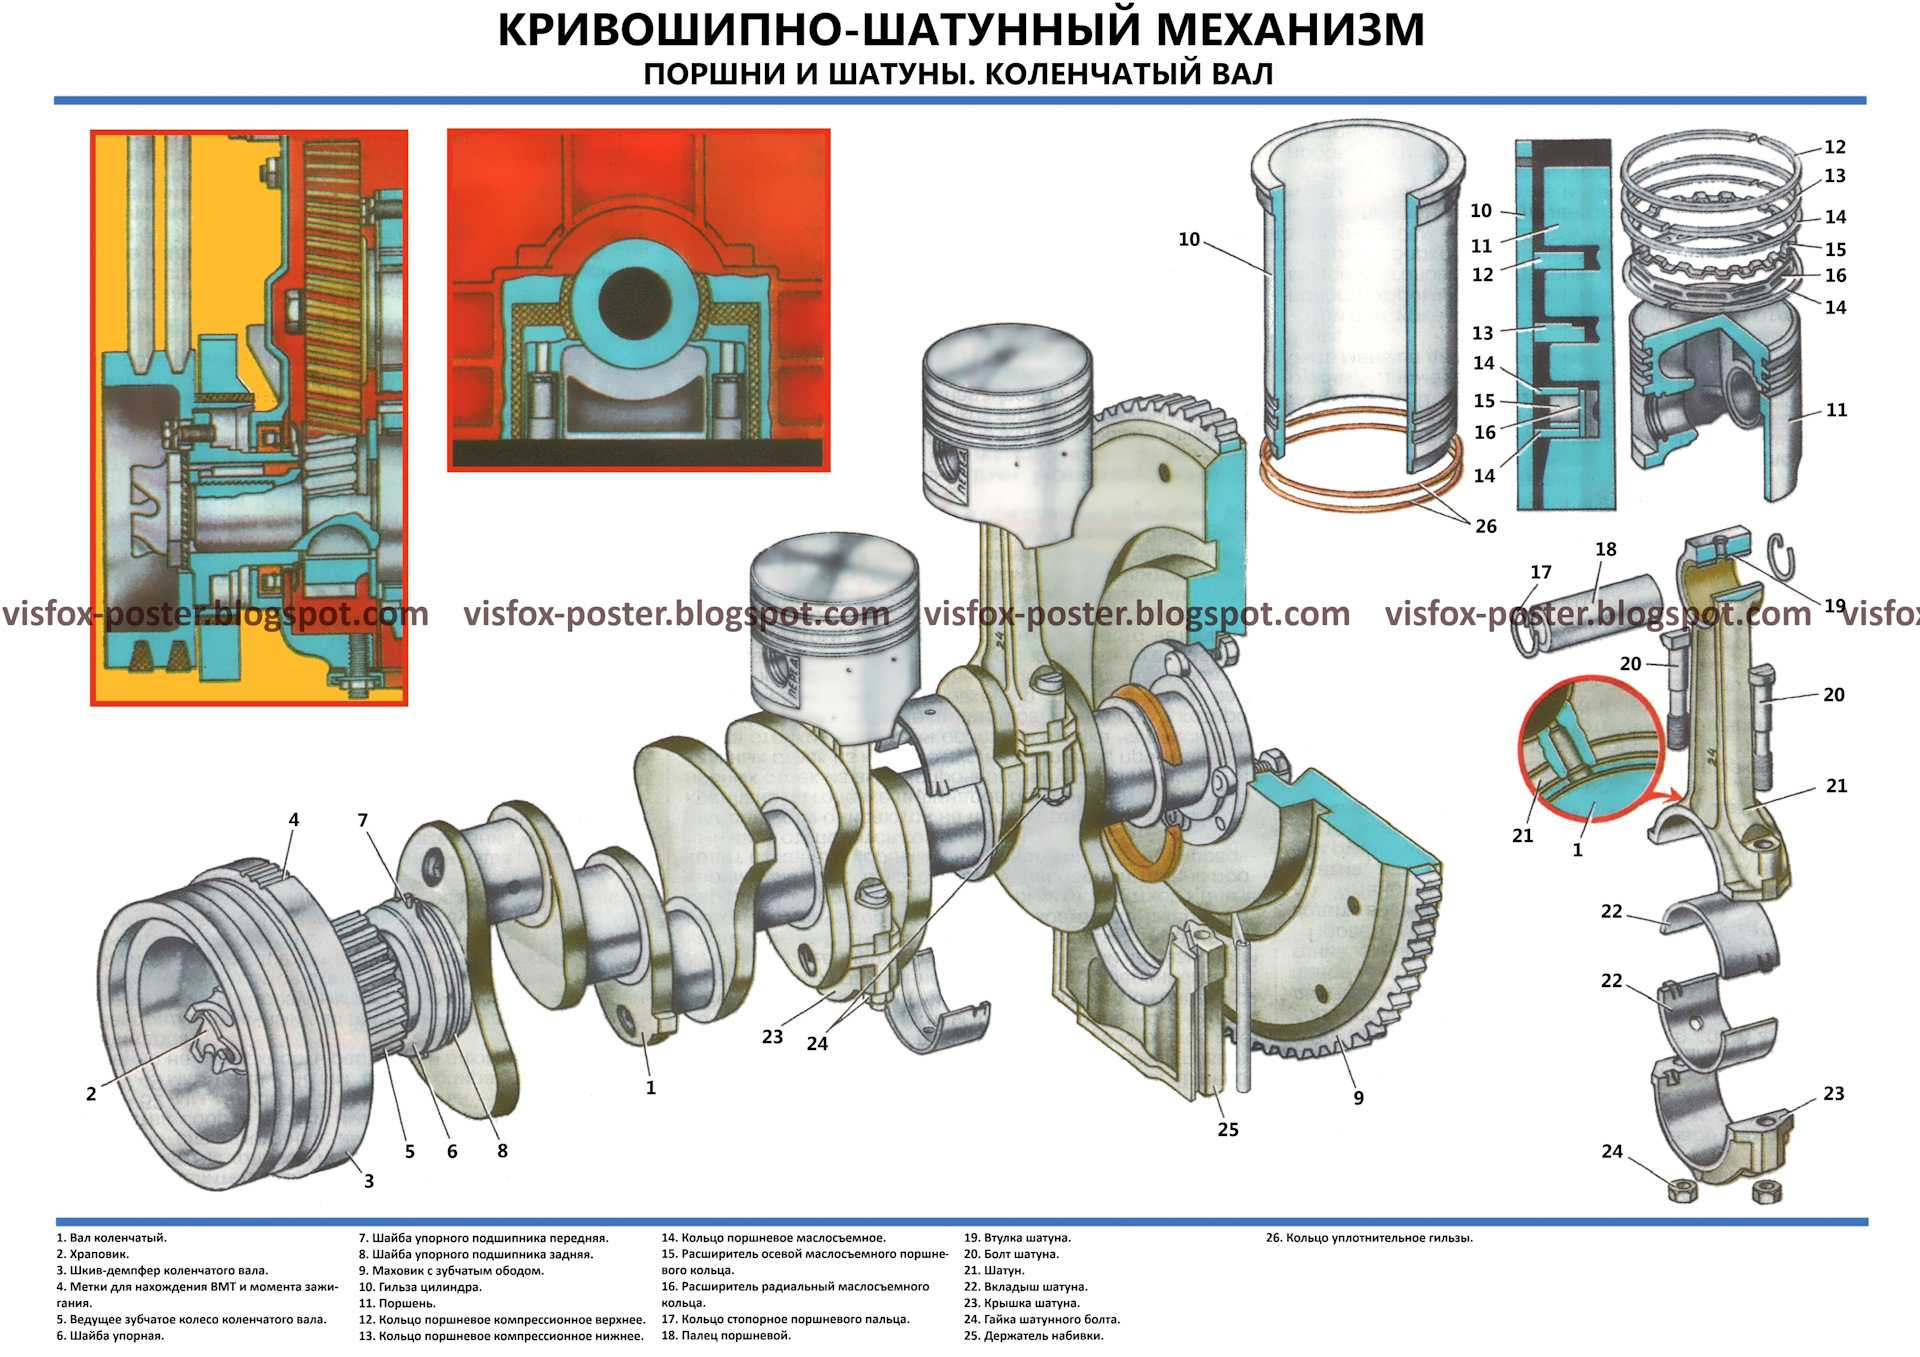 Инструкционно-технологическая карта «разборка-сборка кривошипно-шатунного механизма двигателя зmз-53»